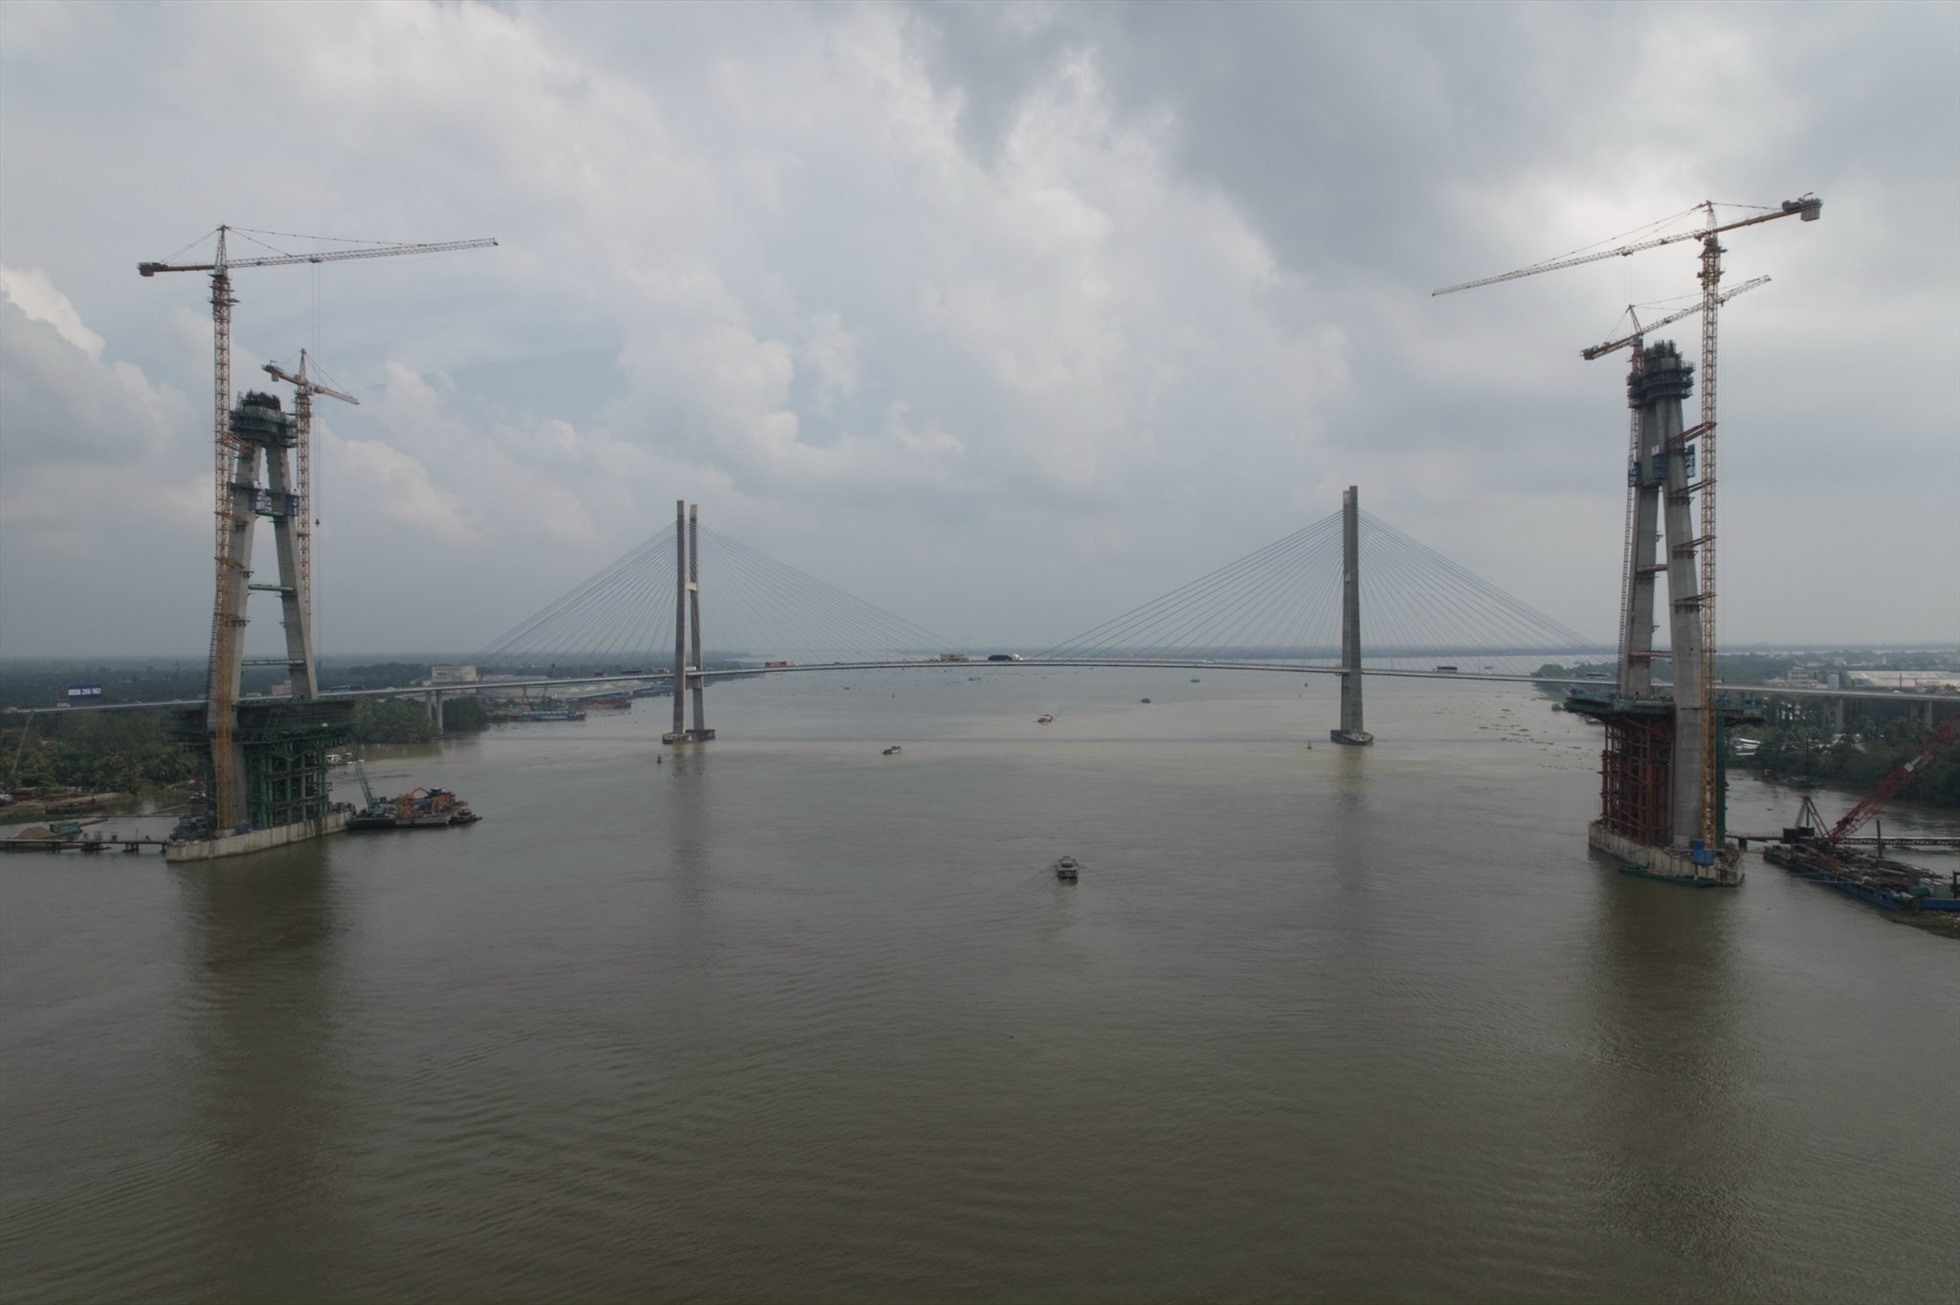 Ghi nhận của Báo Lao Động, chiều ngày 31.1 trên công trình Cầu Mỹ Thuận 2, không khí lao động của những kỹ sư, công nhân đang rất khẩn trương, gấp rút làm việc để phấn đấu hoàn thành đưa dự án vào sử dụng sớm nhất.